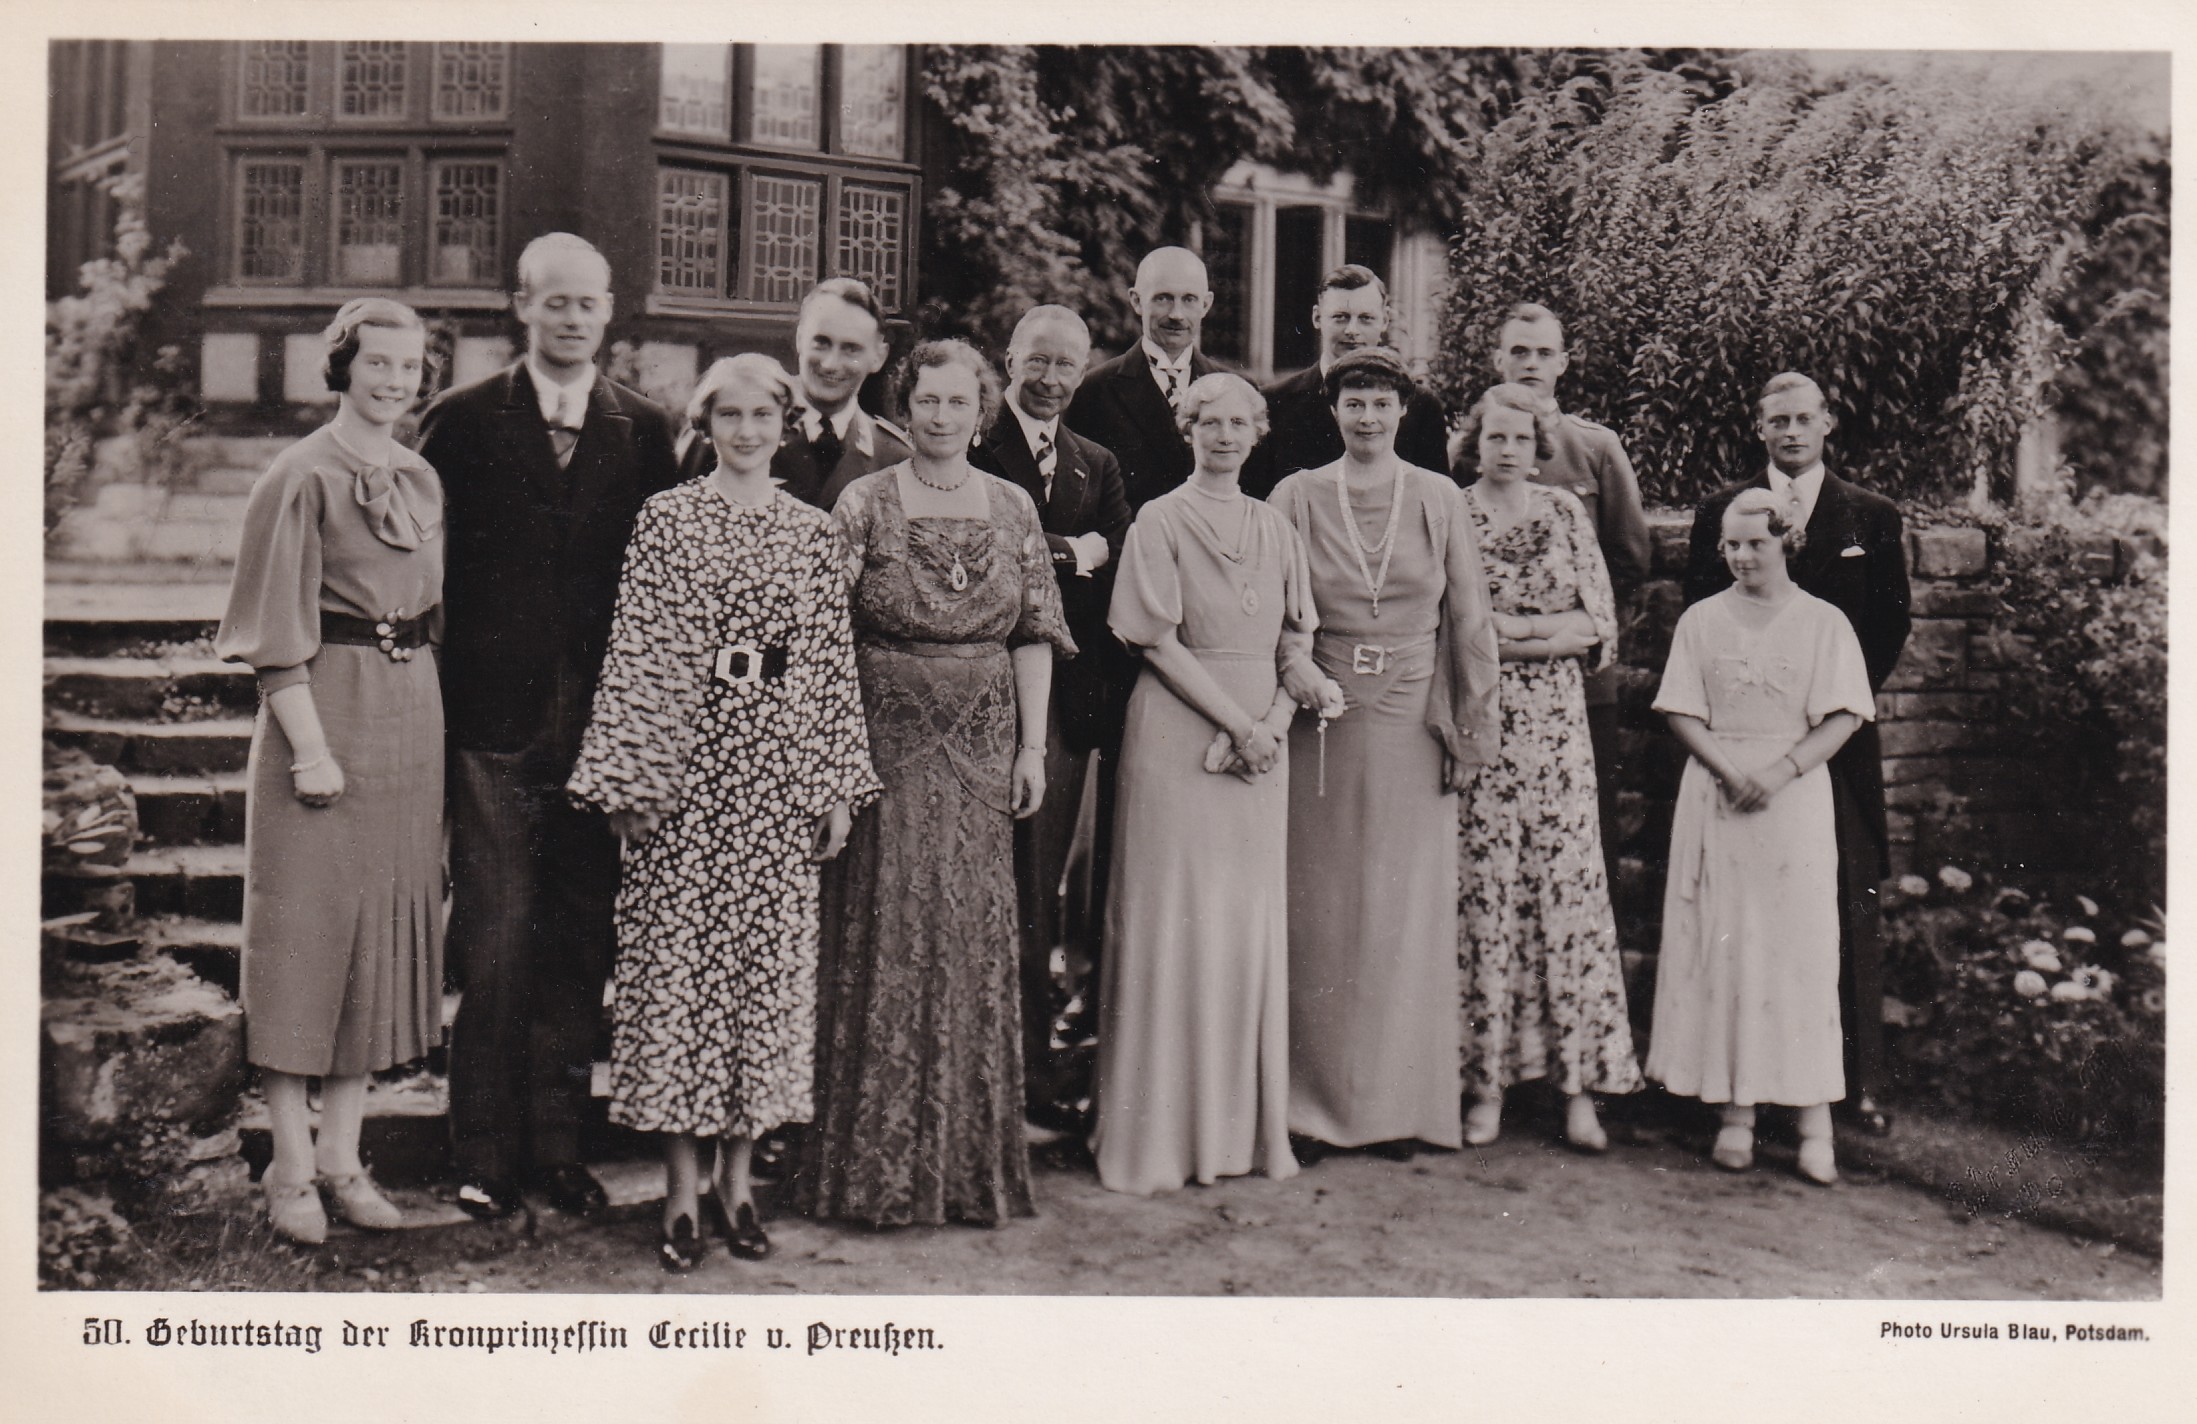 Bildpostkarte mit Gruppenfoto anlässlich des 50. Geburtstags der ehemaligen Kronprinzessin Cecilie, 1936 (Schloß Wernigerode GmbH RR-F)